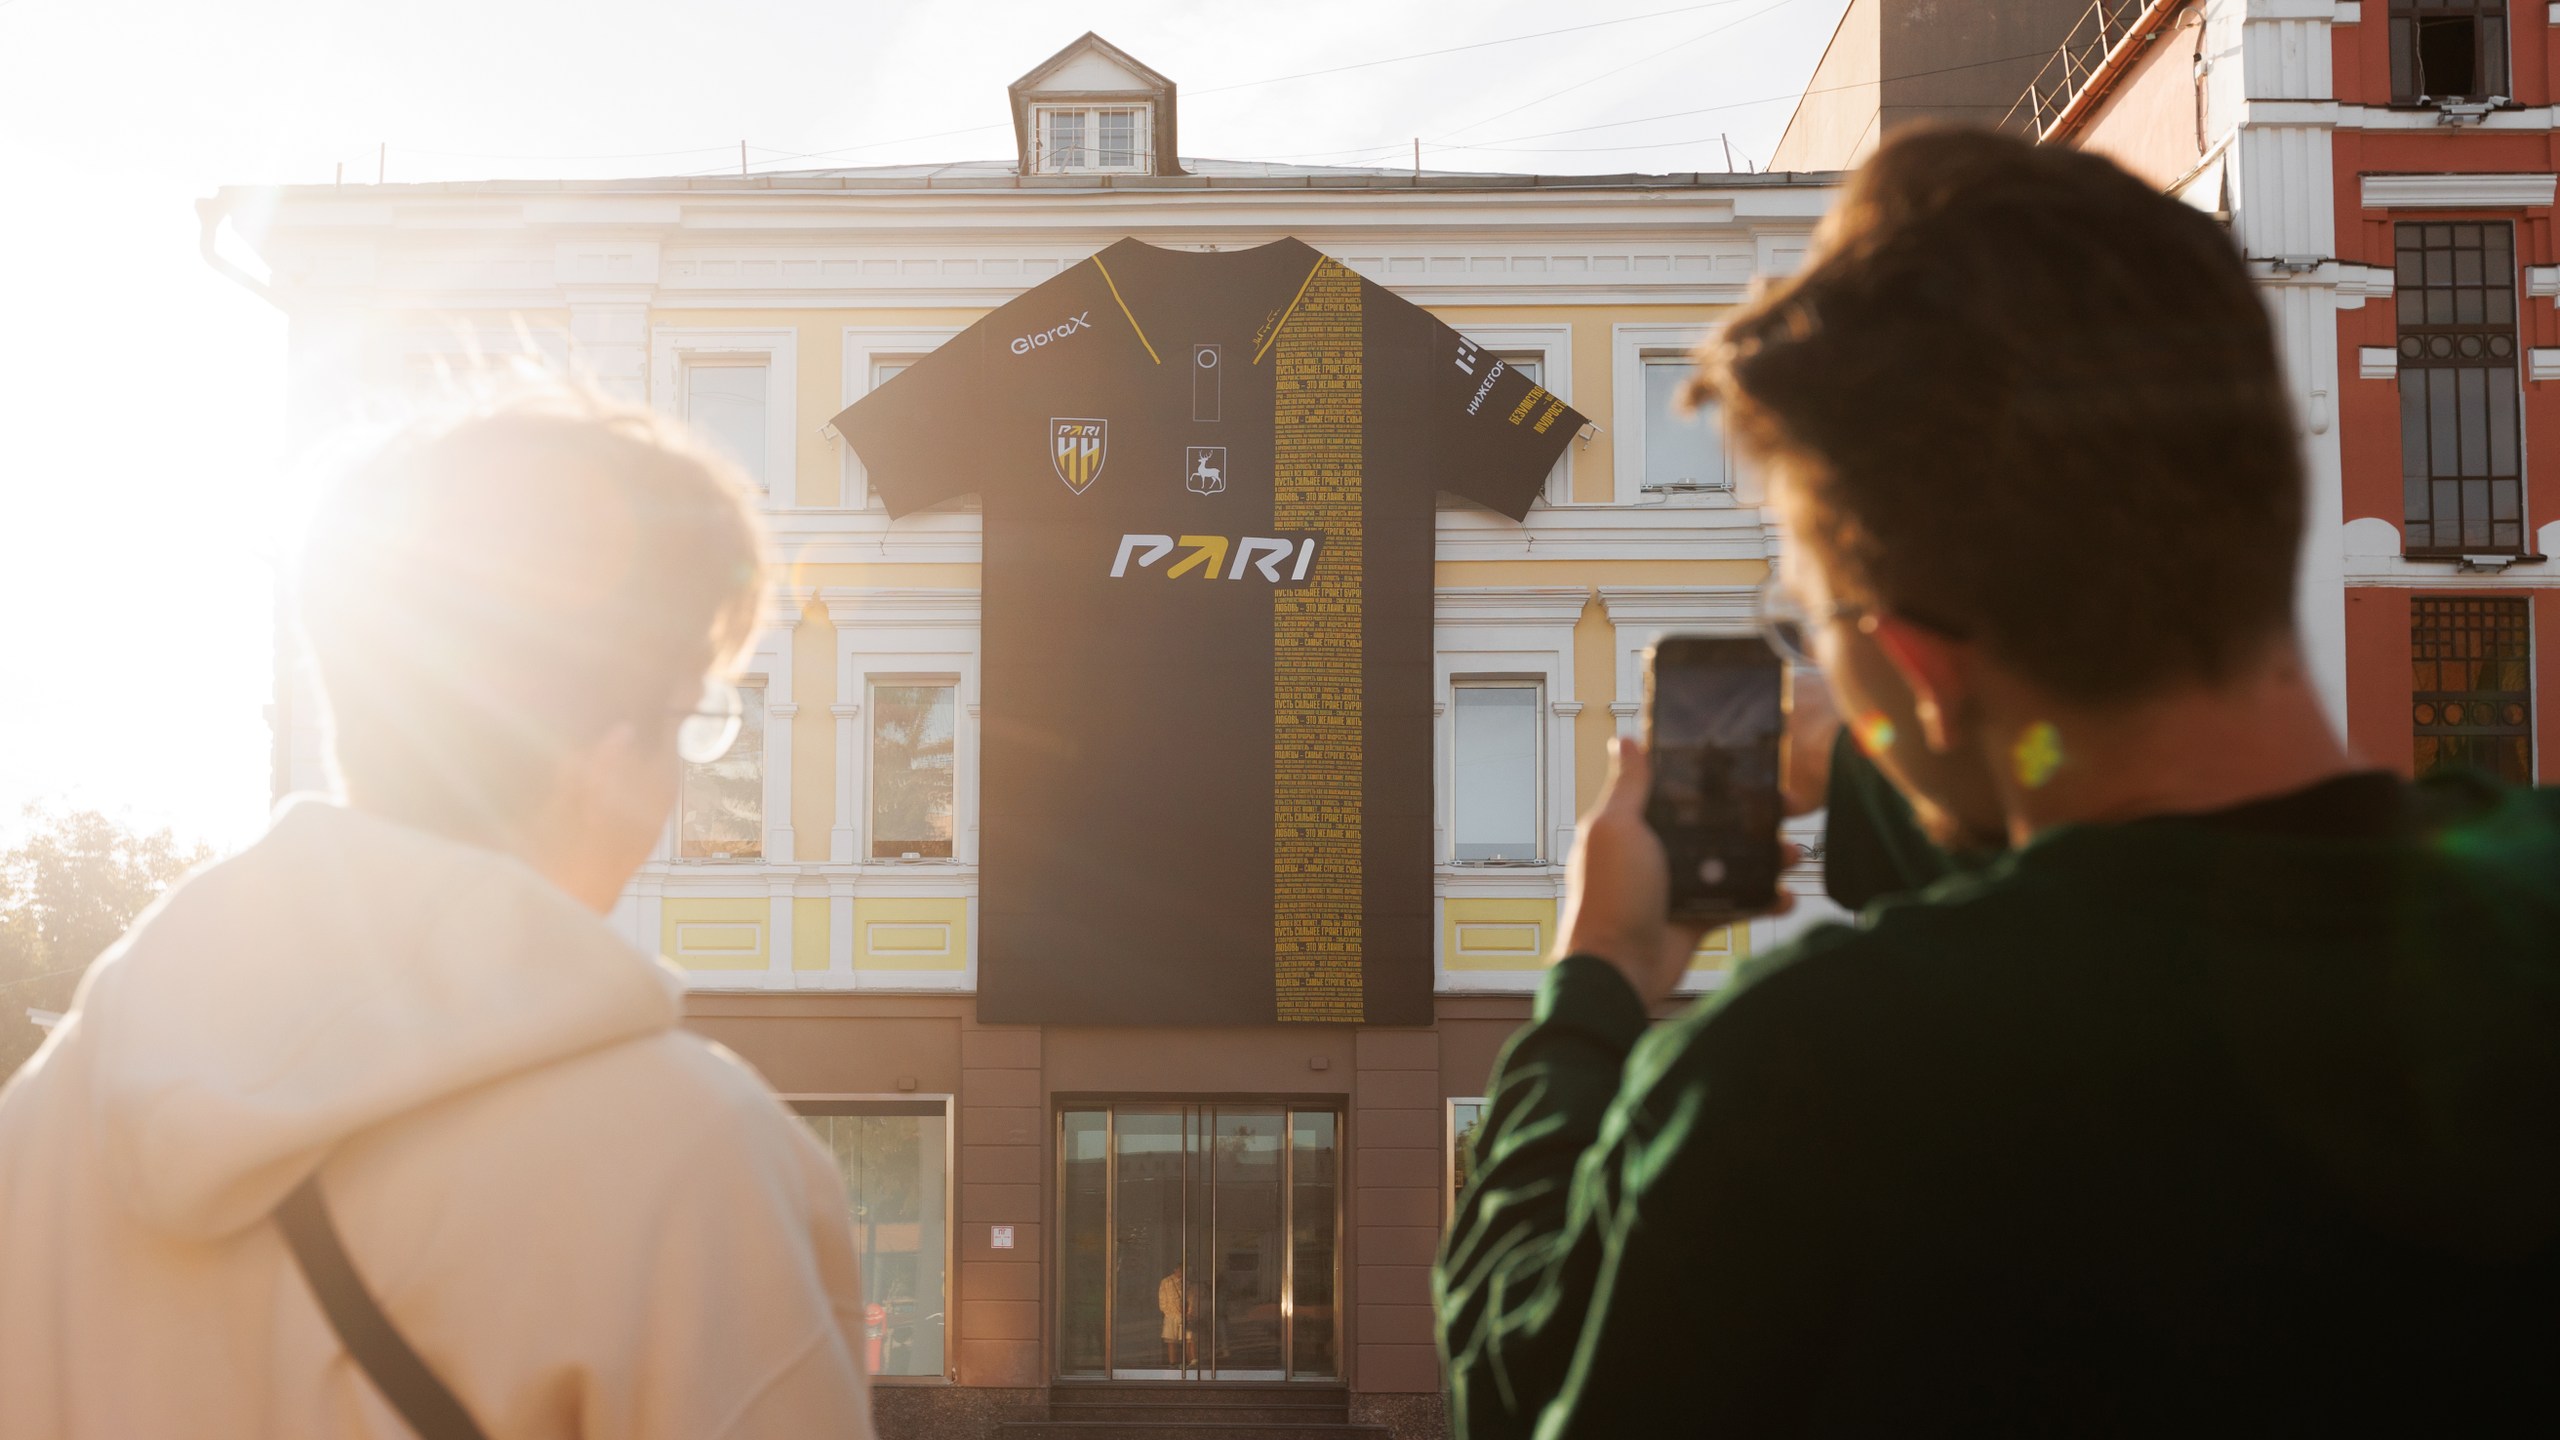 PARI и «Пари НН» представили форму в честь Максима Горького на центральных улицах Нижнего Новгорода